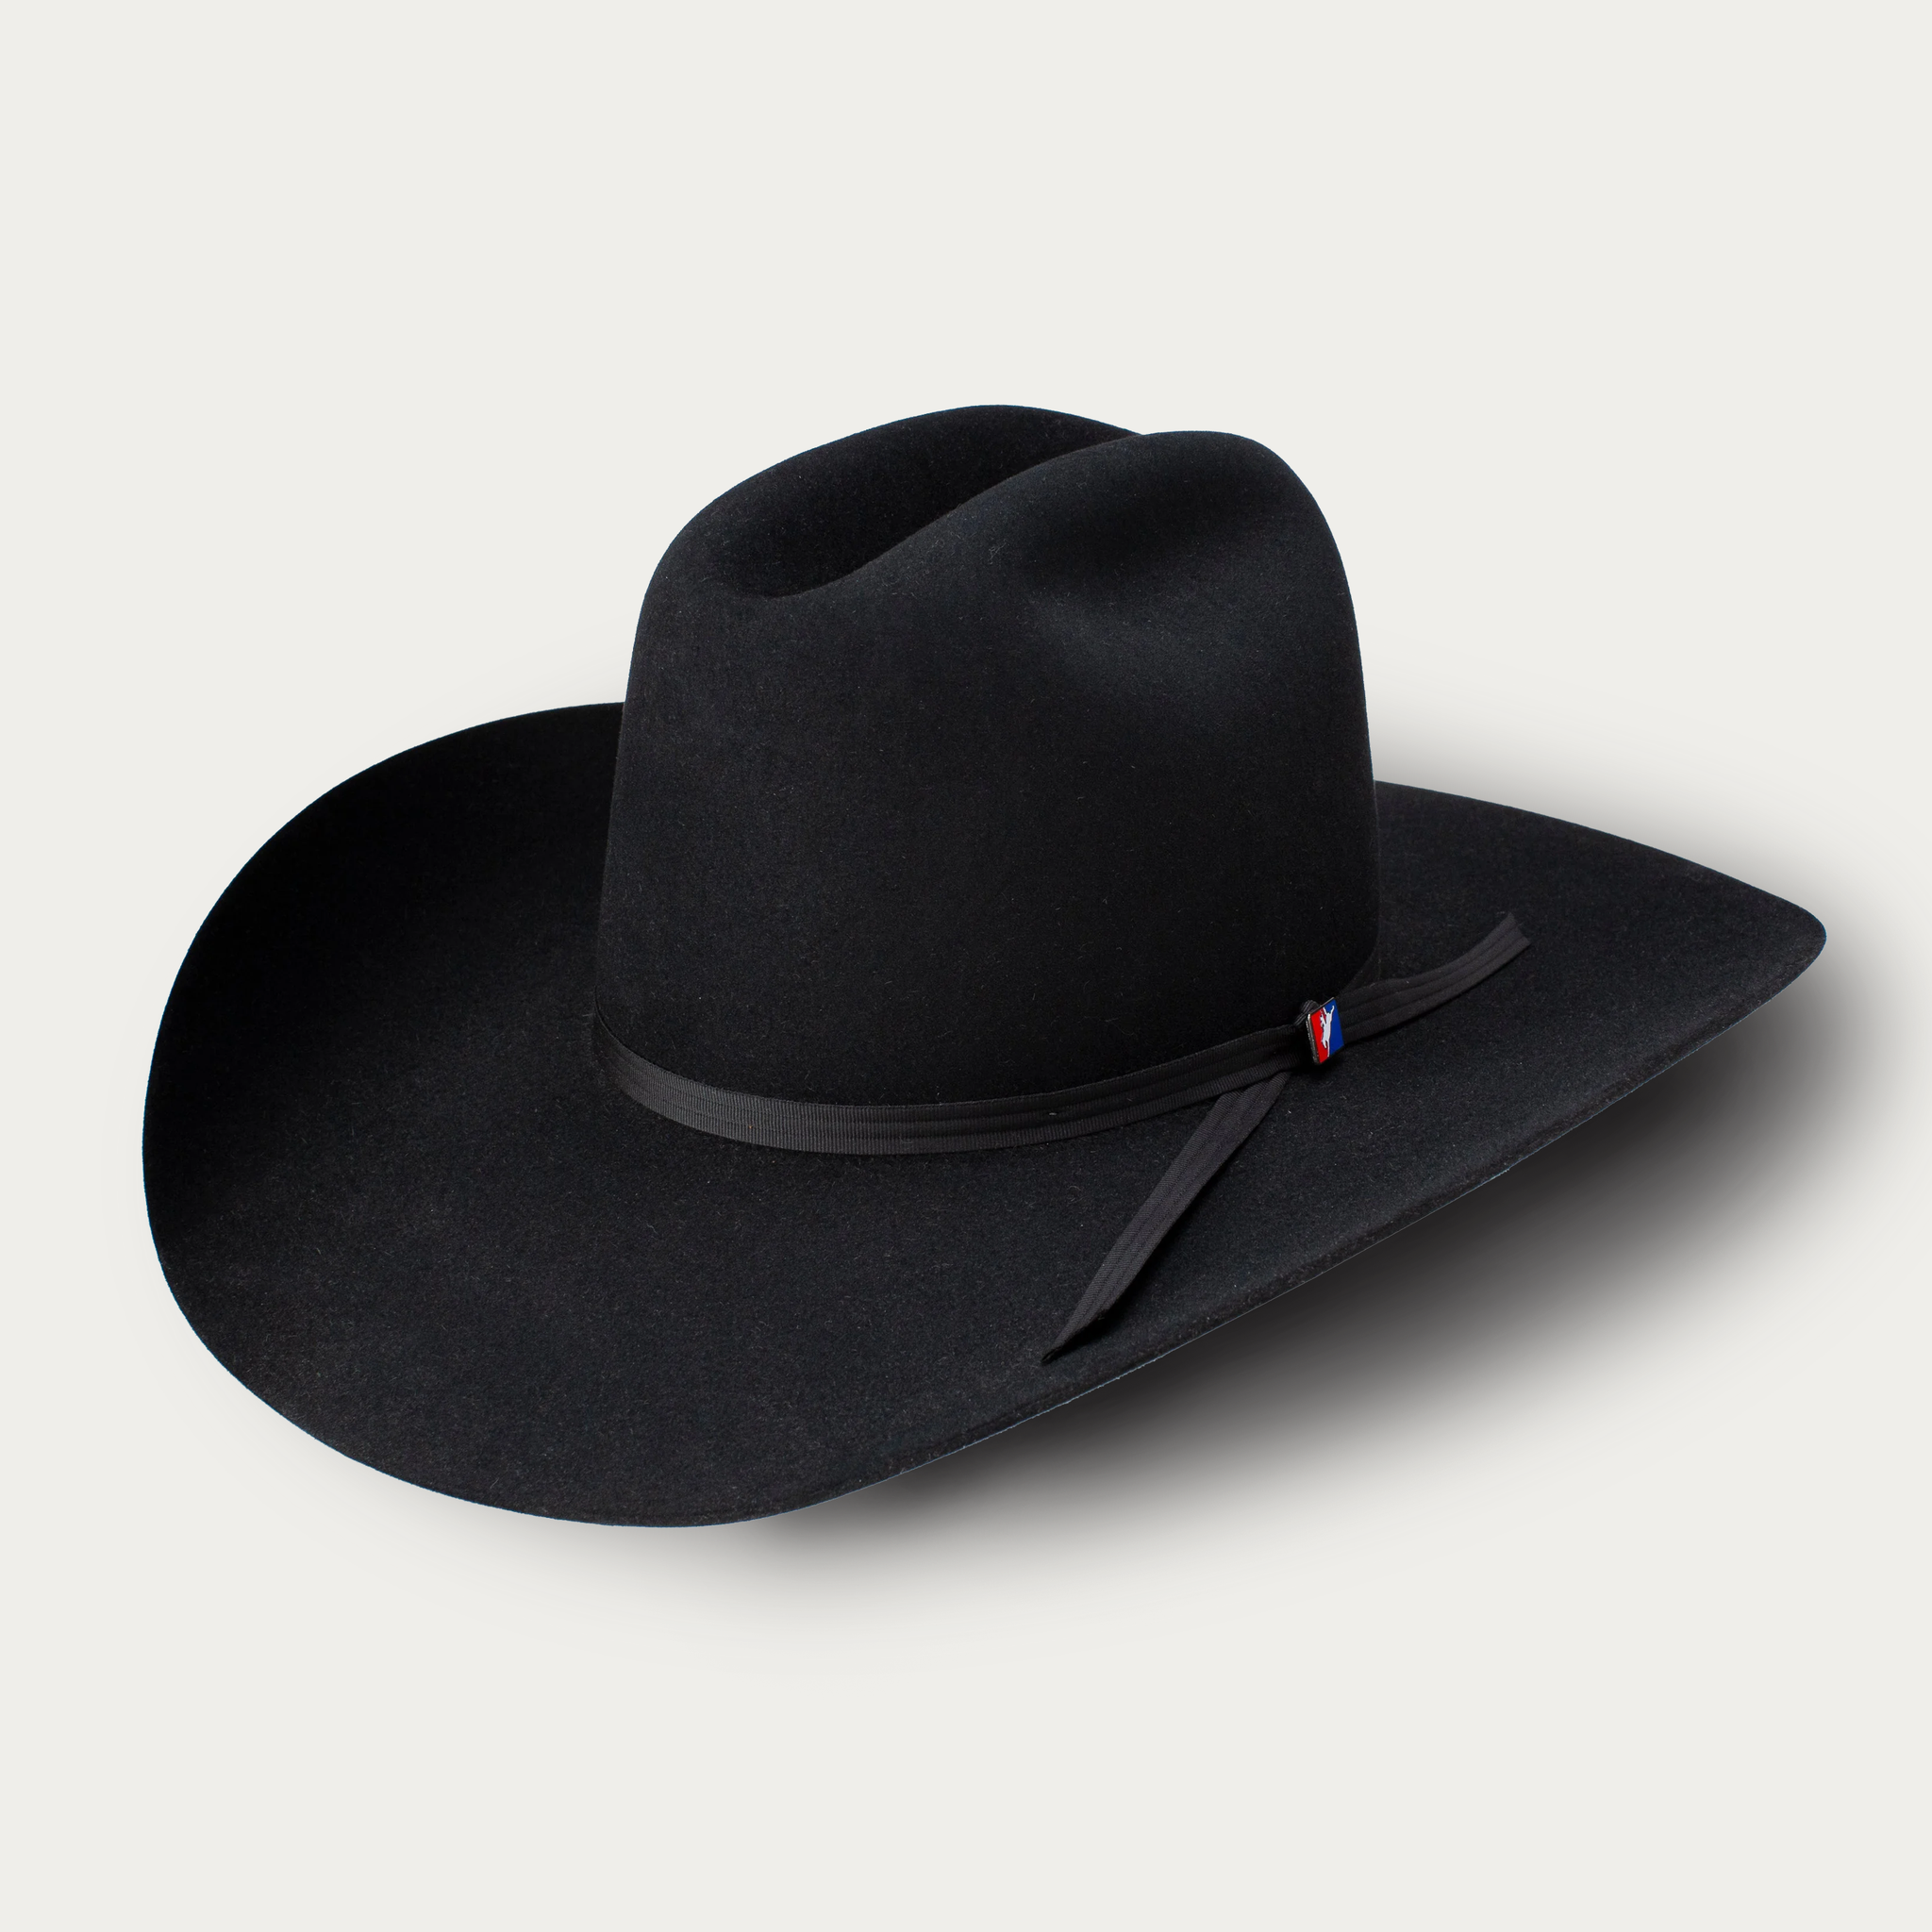 100X Premier Iconic Black Felt Cowboy Hat